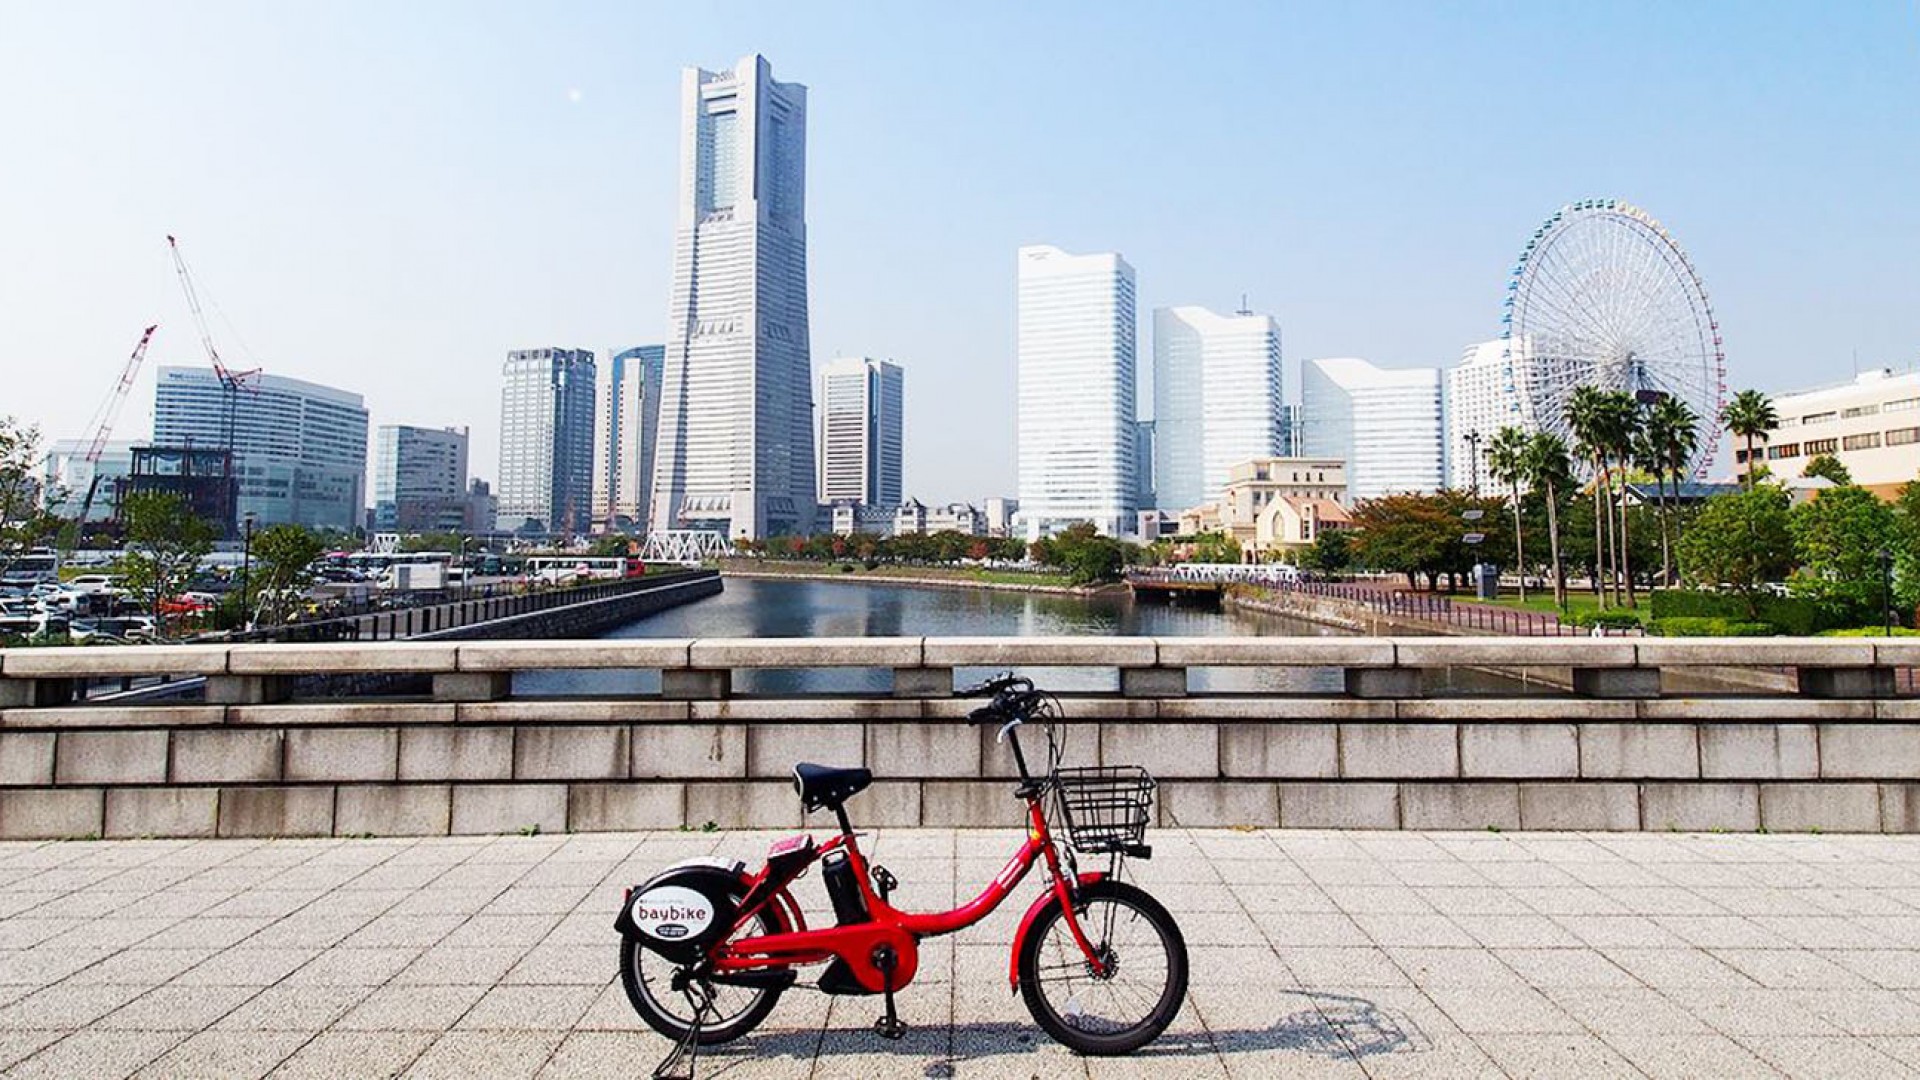 骑 Baybike电动自行车游览横滨市